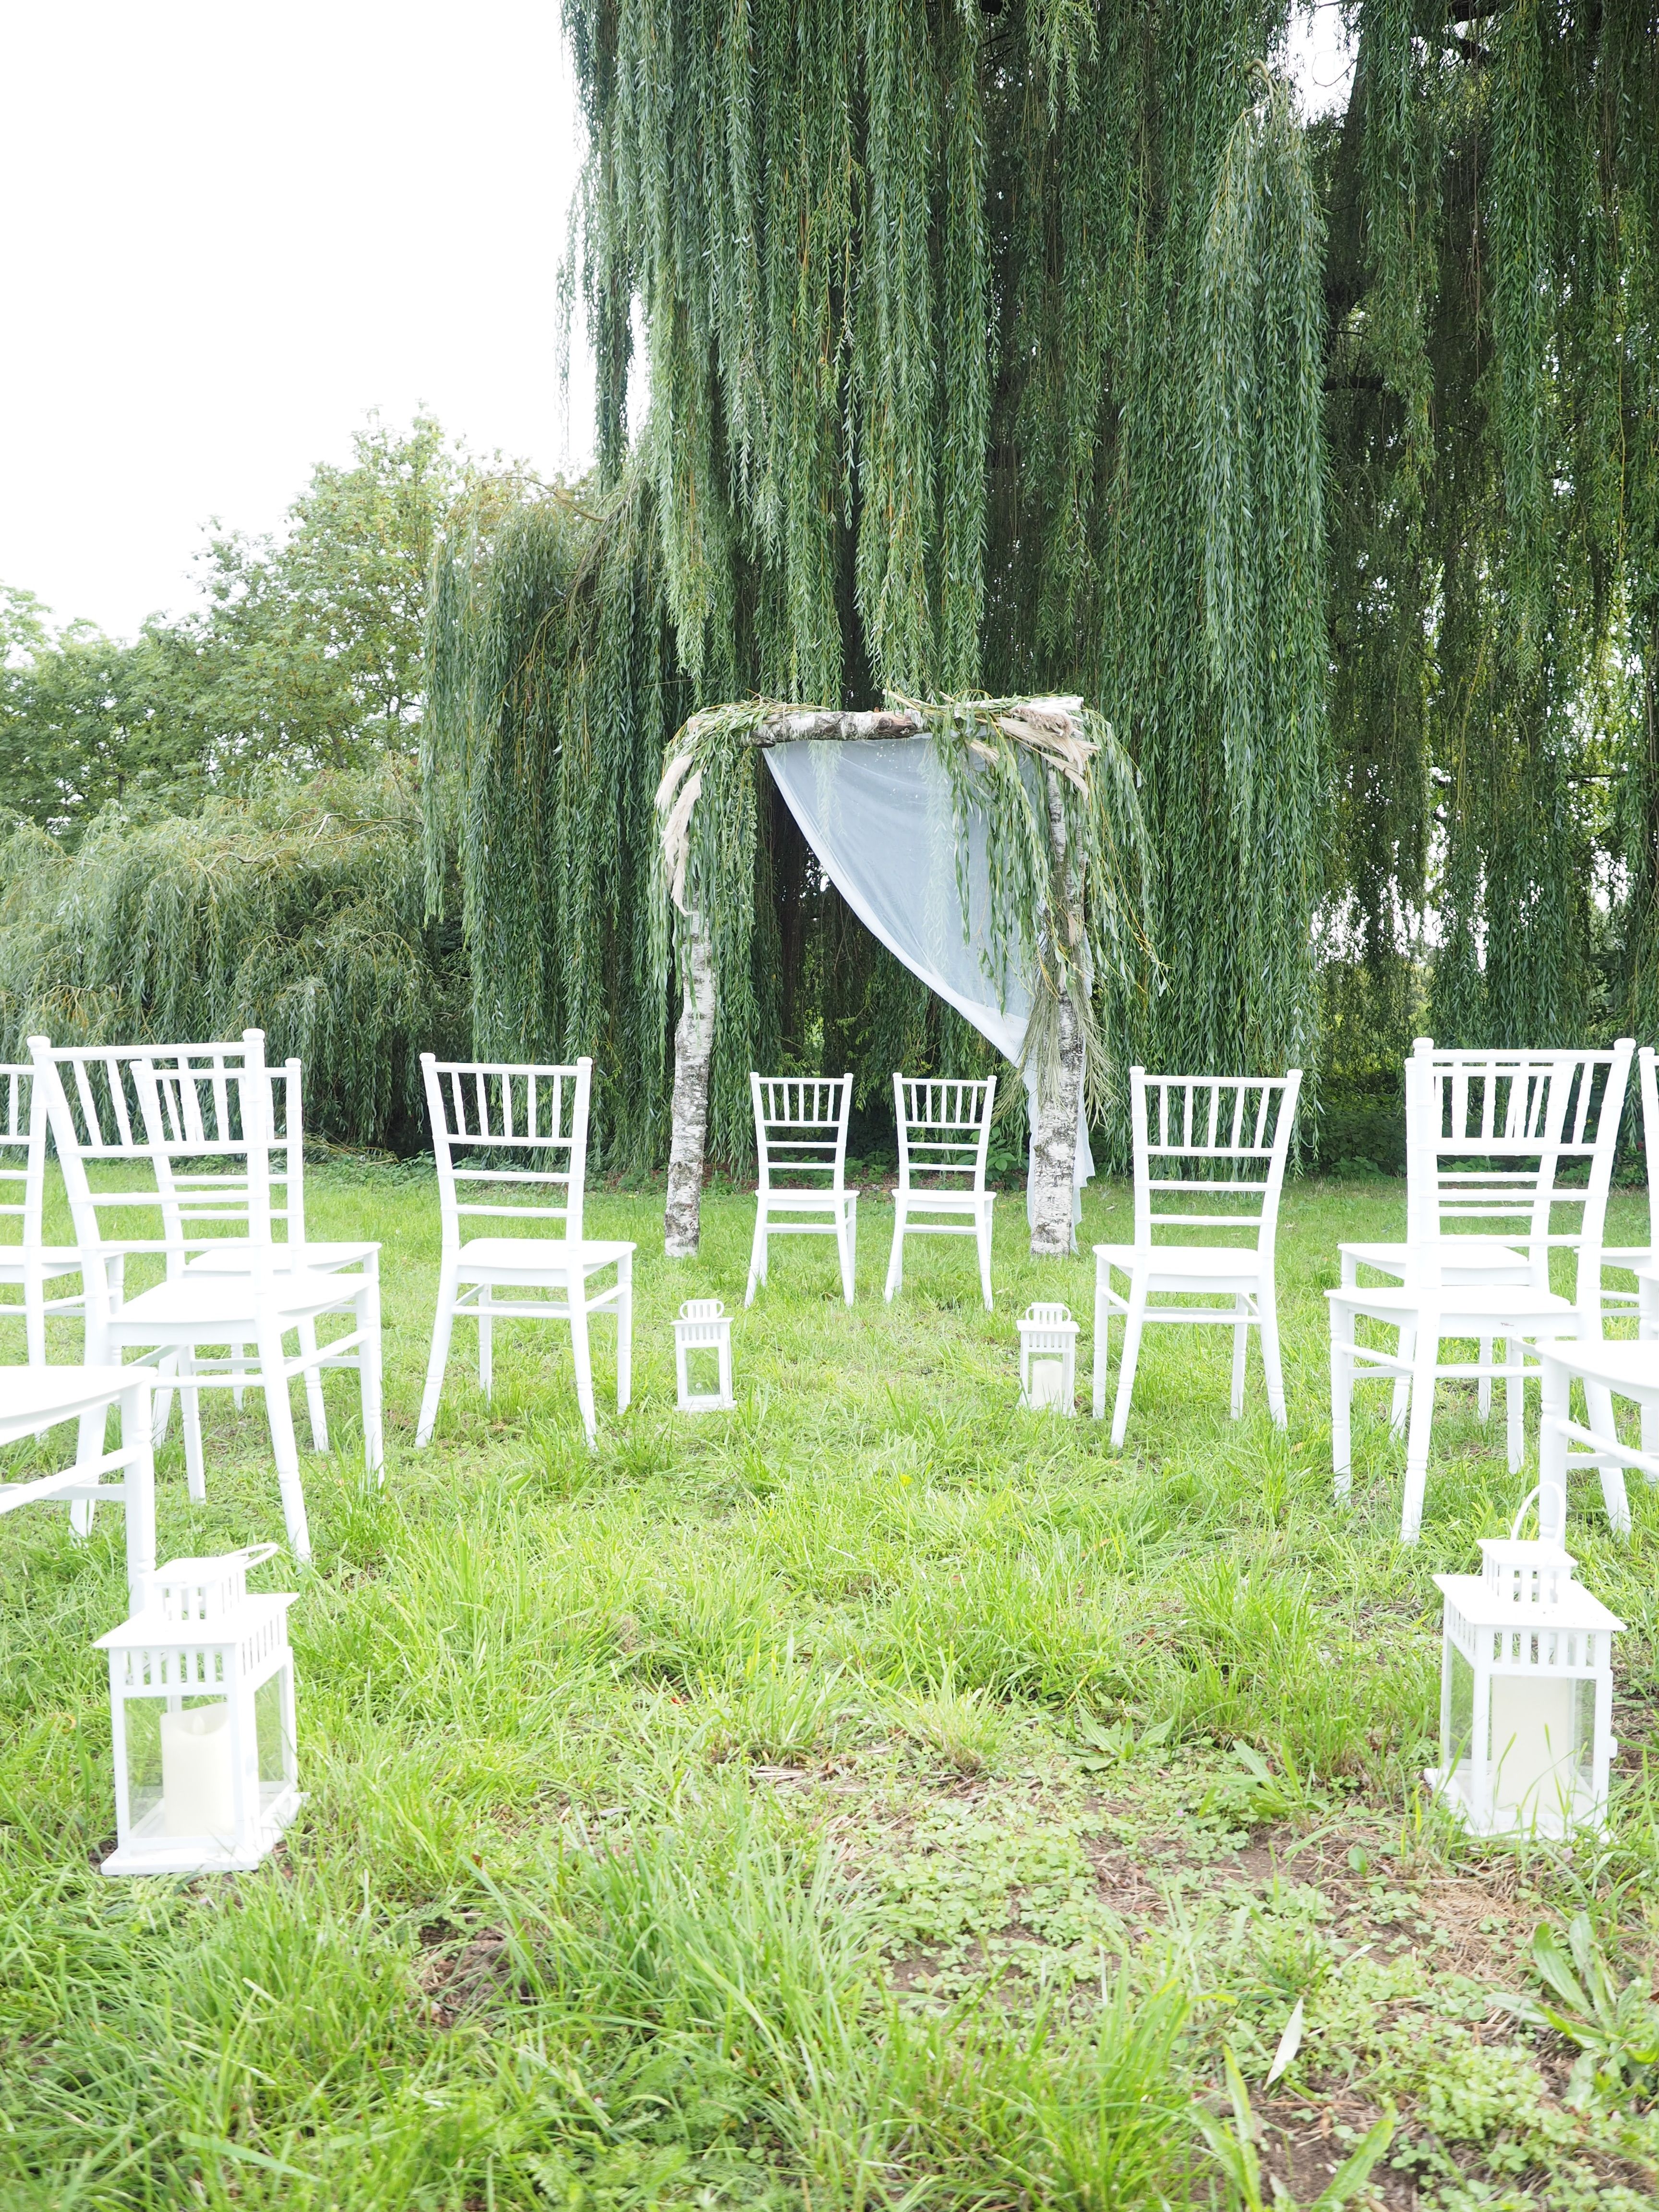 Das Bild zeigt die Möglichkeit einer Außenbestuhlung für z.B. eine Hochzeitsfeier vor einem Birkenholzrahmen, der festlich für eine Trauung geschmückt ist.